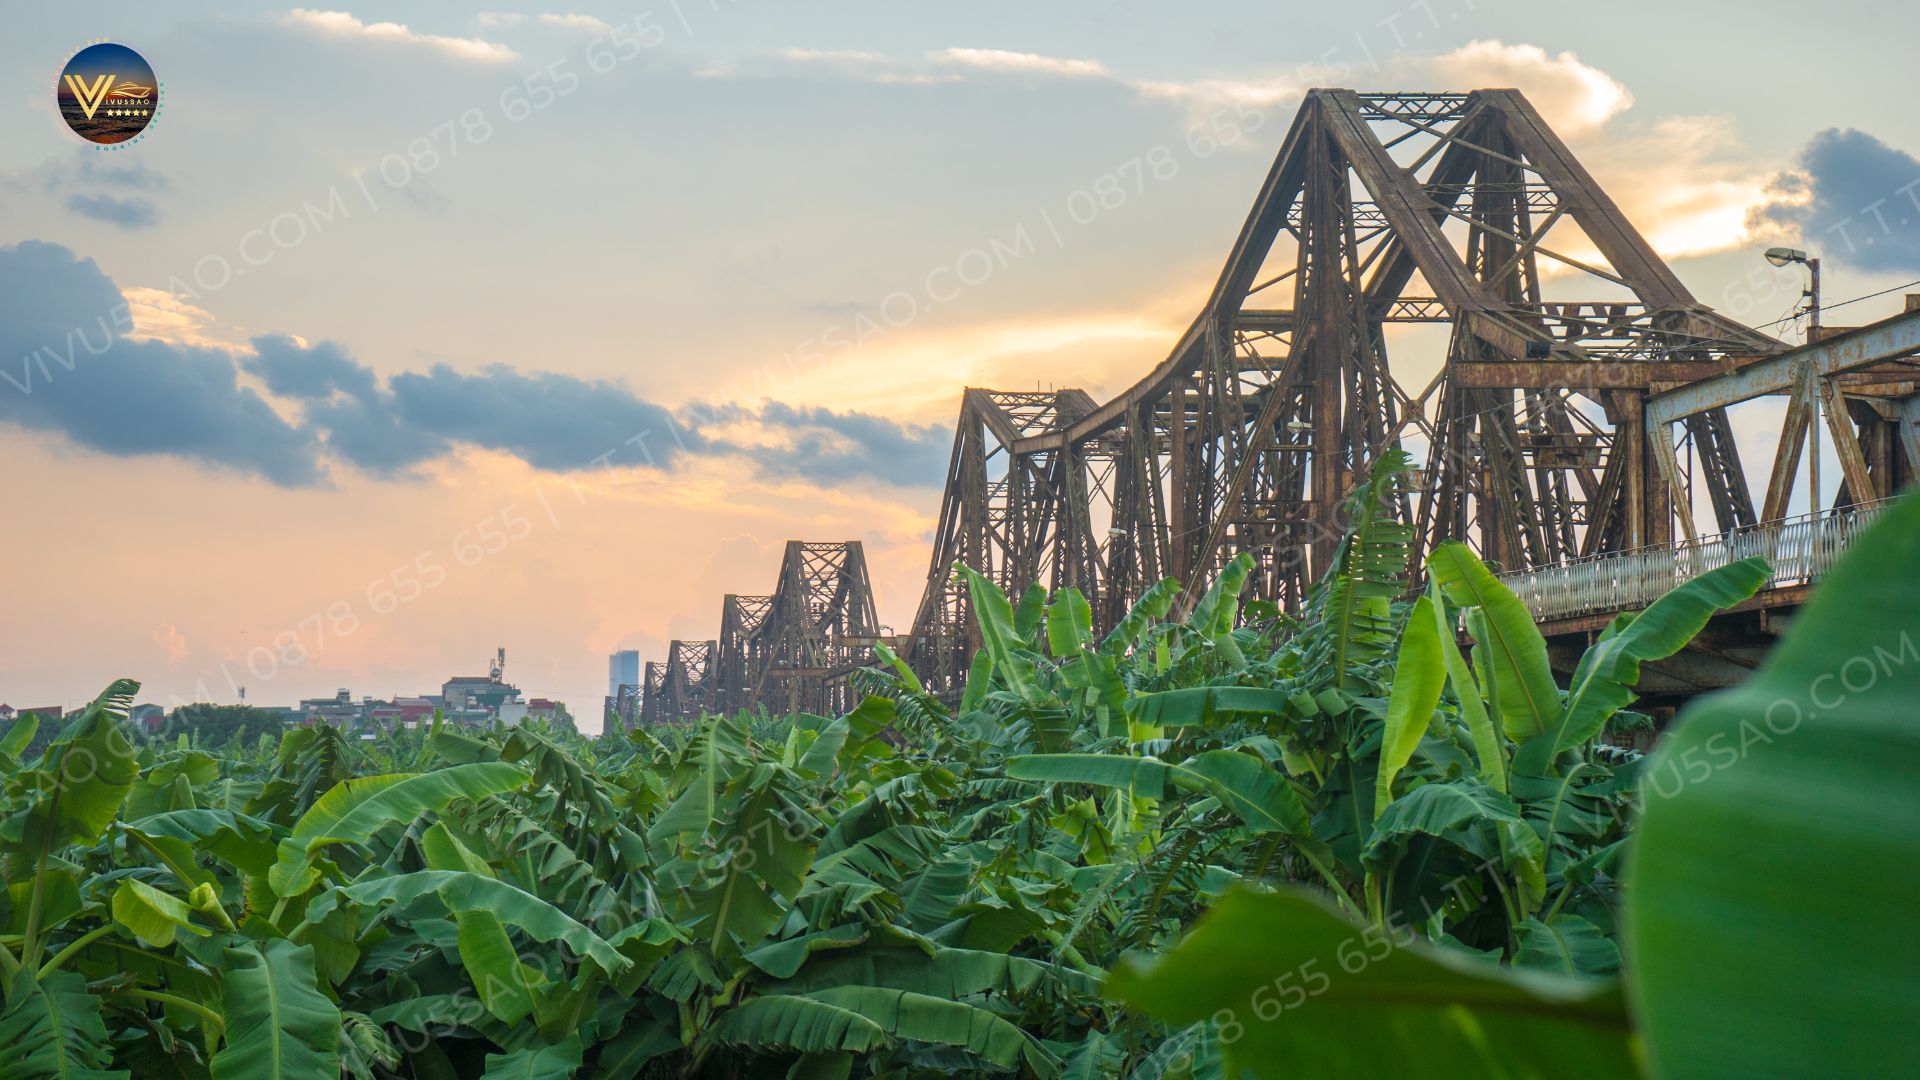 Cầu Long Biên - Kỳ quan kiến trúc và “Chứng nhân lịch sử” của Việt Nam 2023